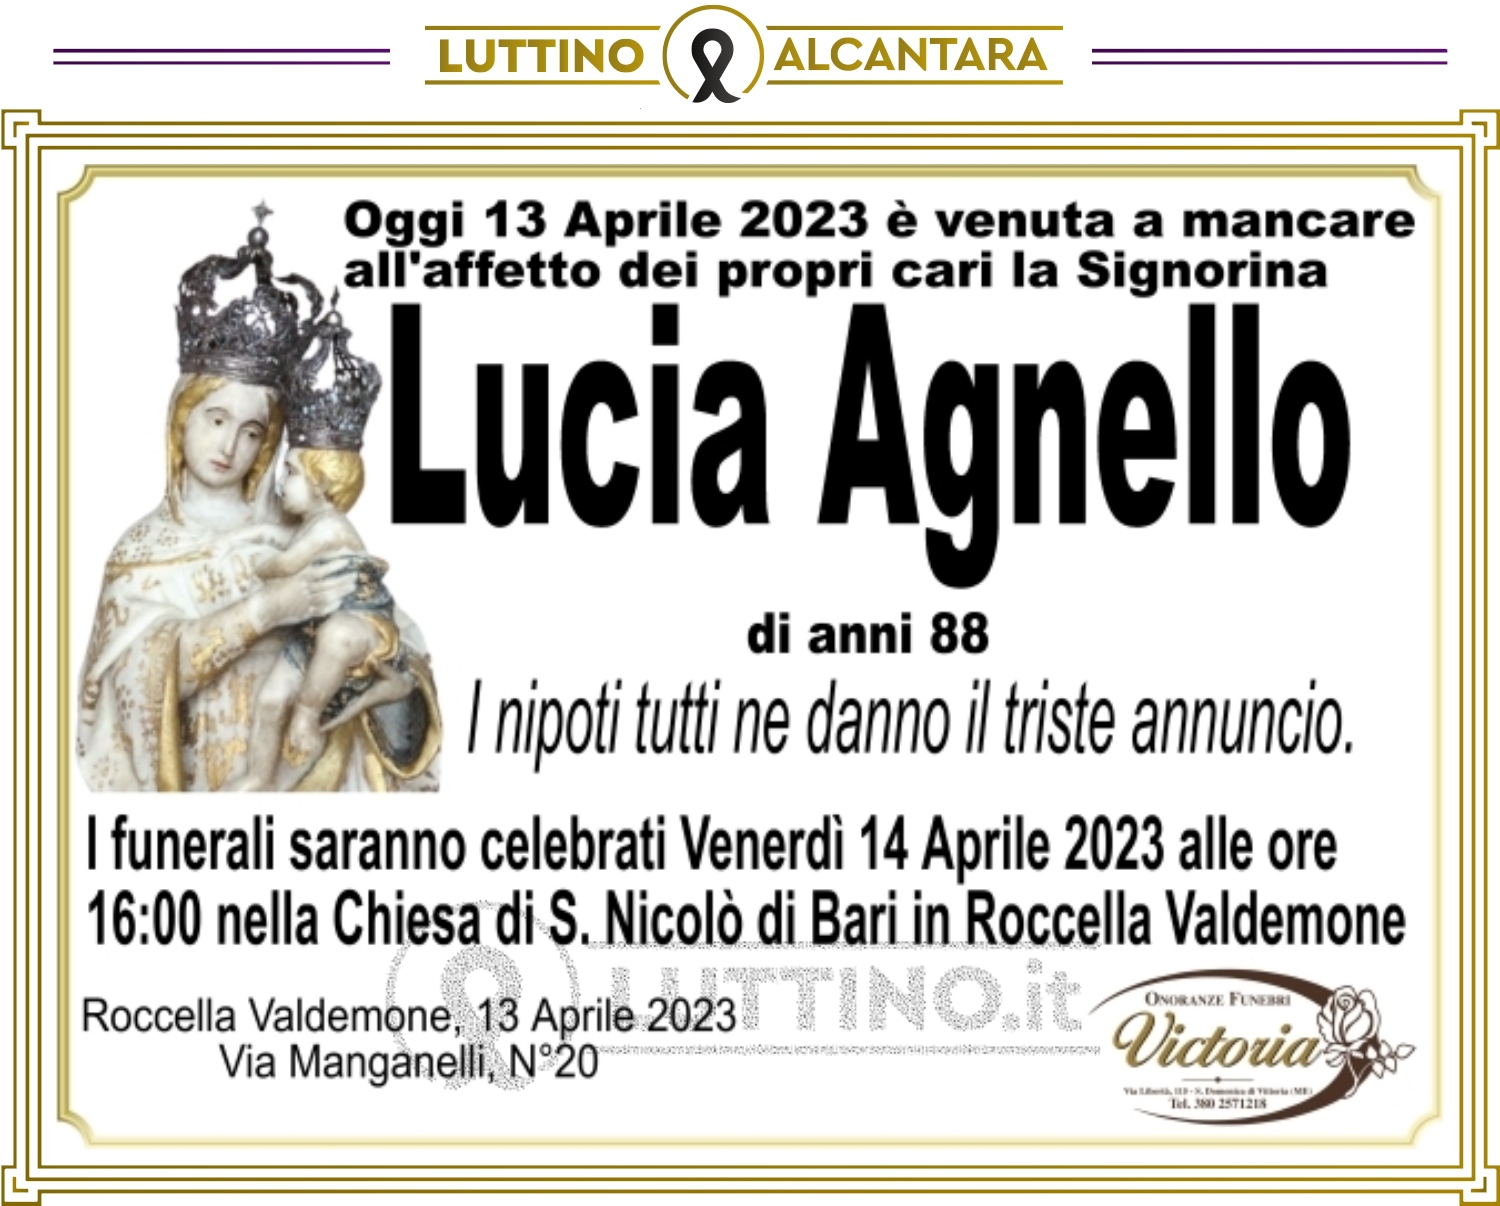 Lucia Agnello